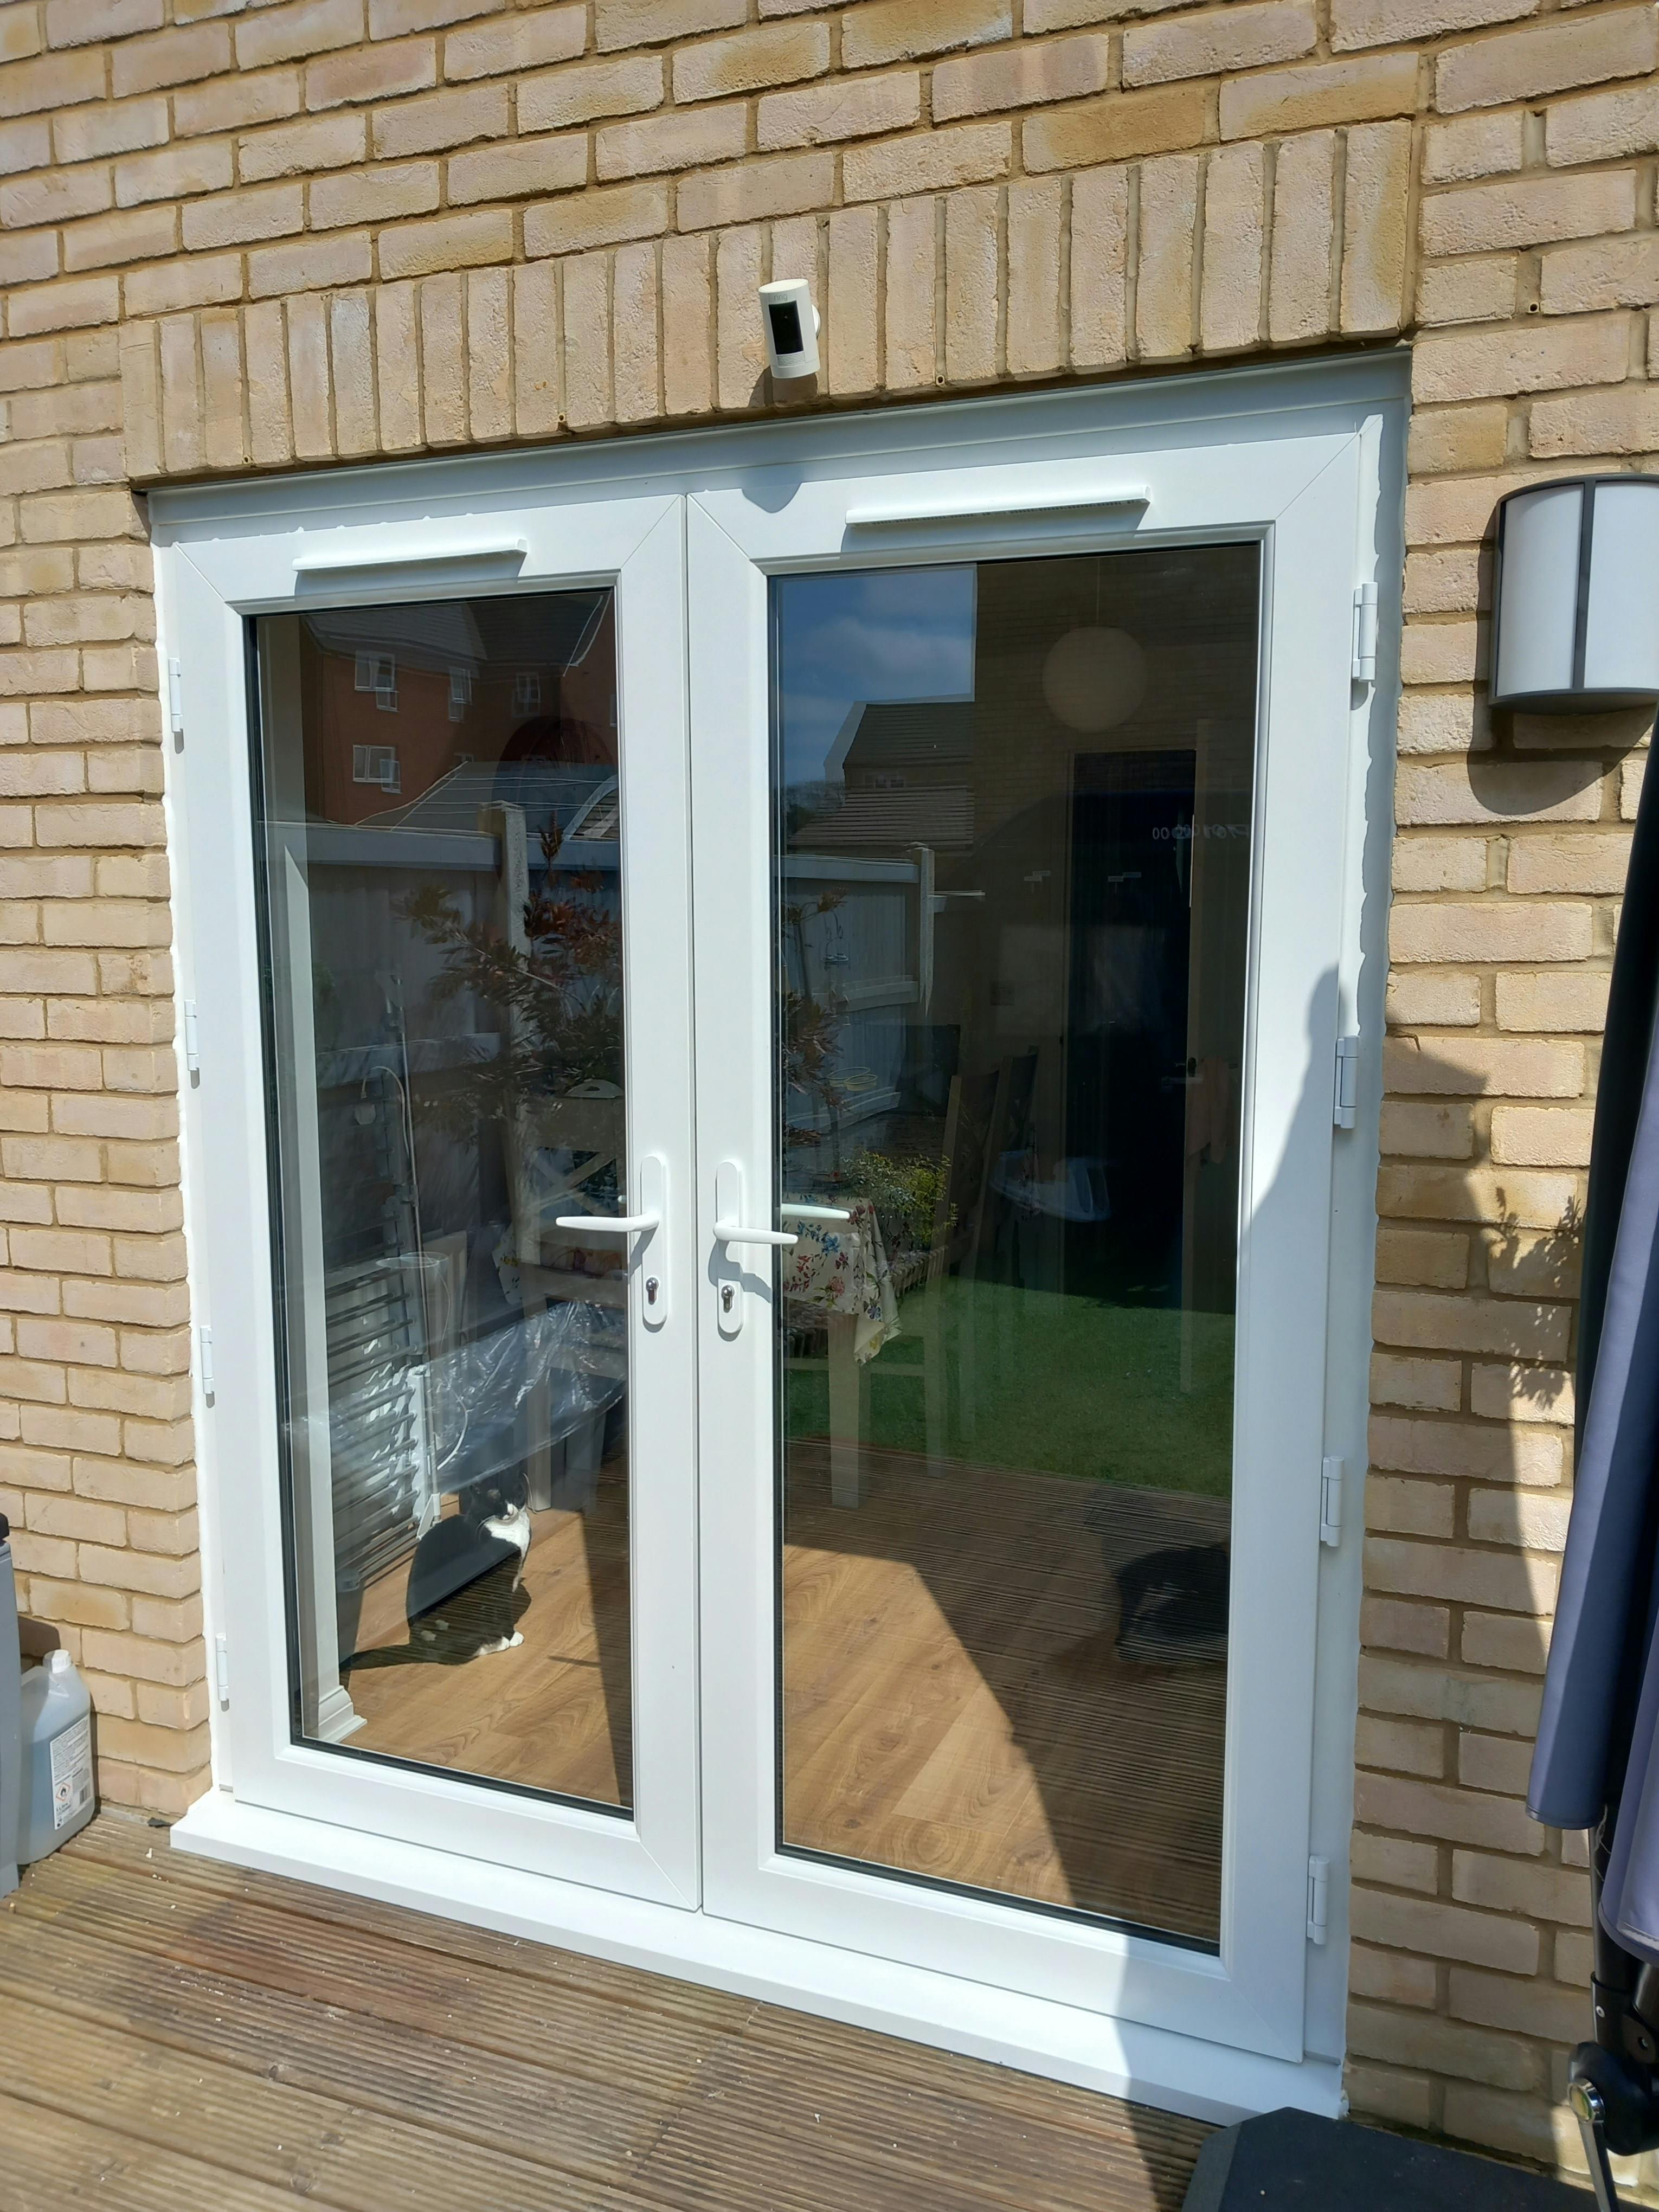 Enhanced indoor-outdoor flow with French doors recent work card